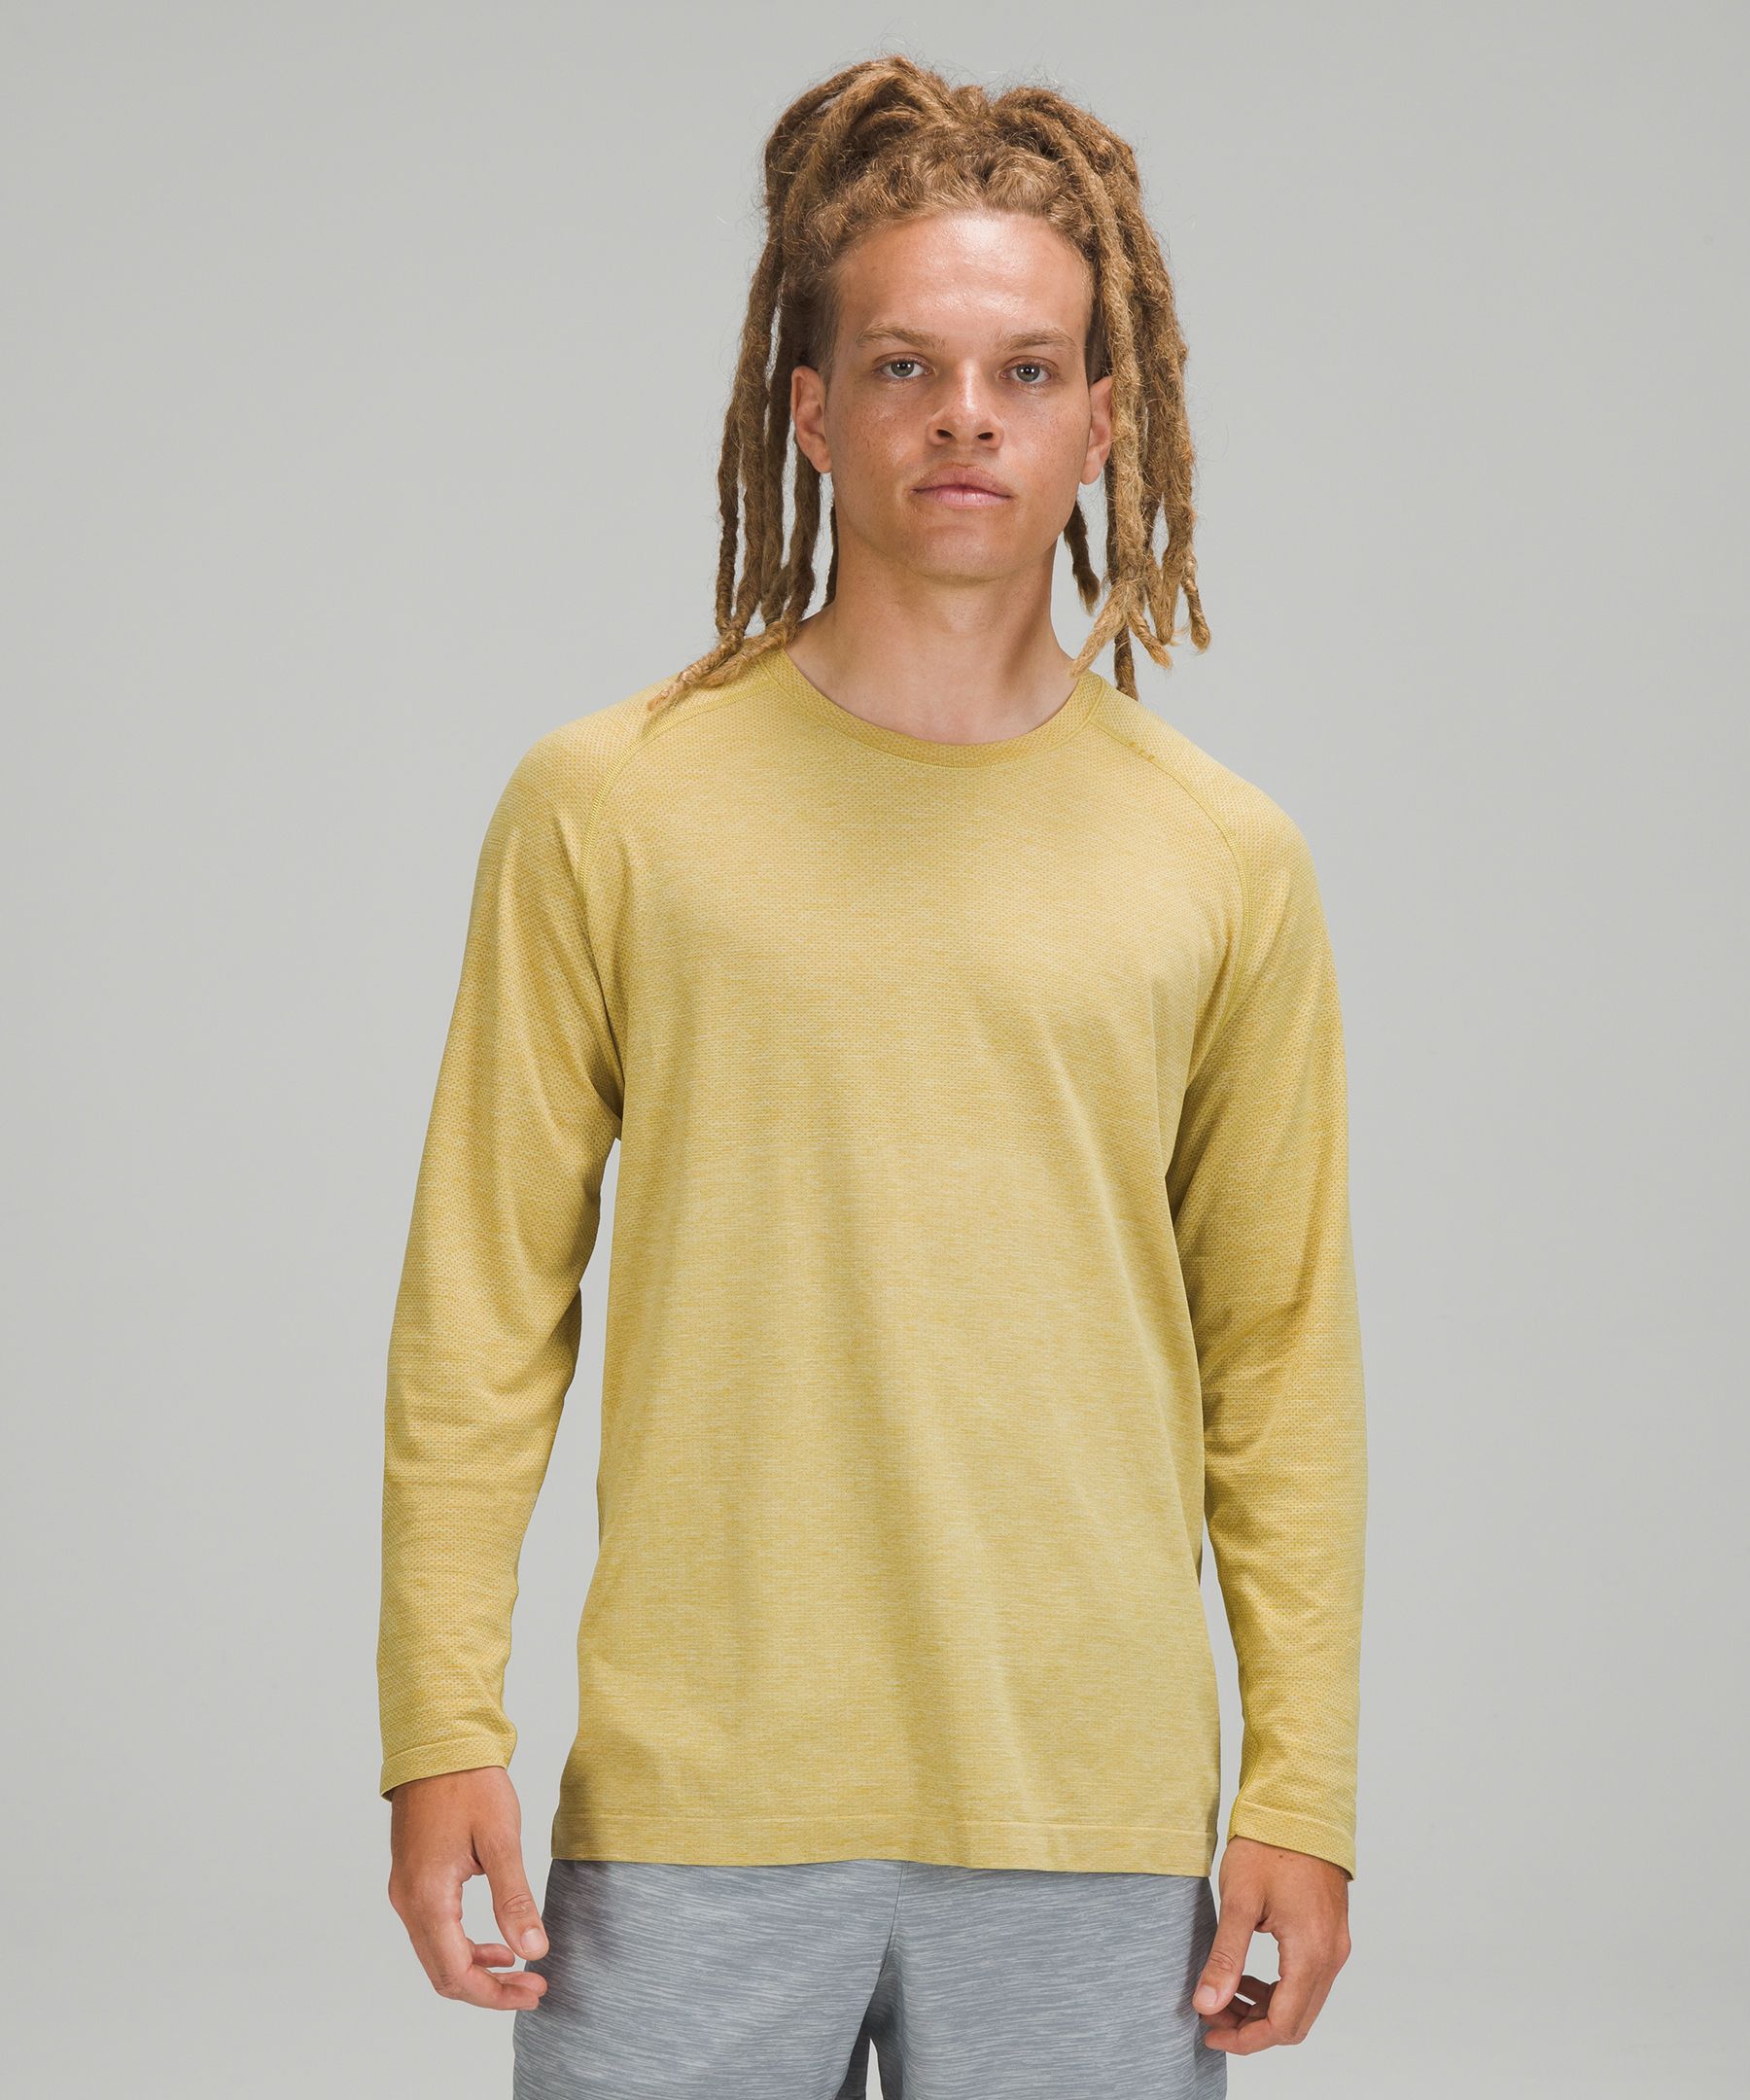 Lululemon Metal Vent Tech Long Sleeve Shirt 2.0 In Auric Gold/dew Green